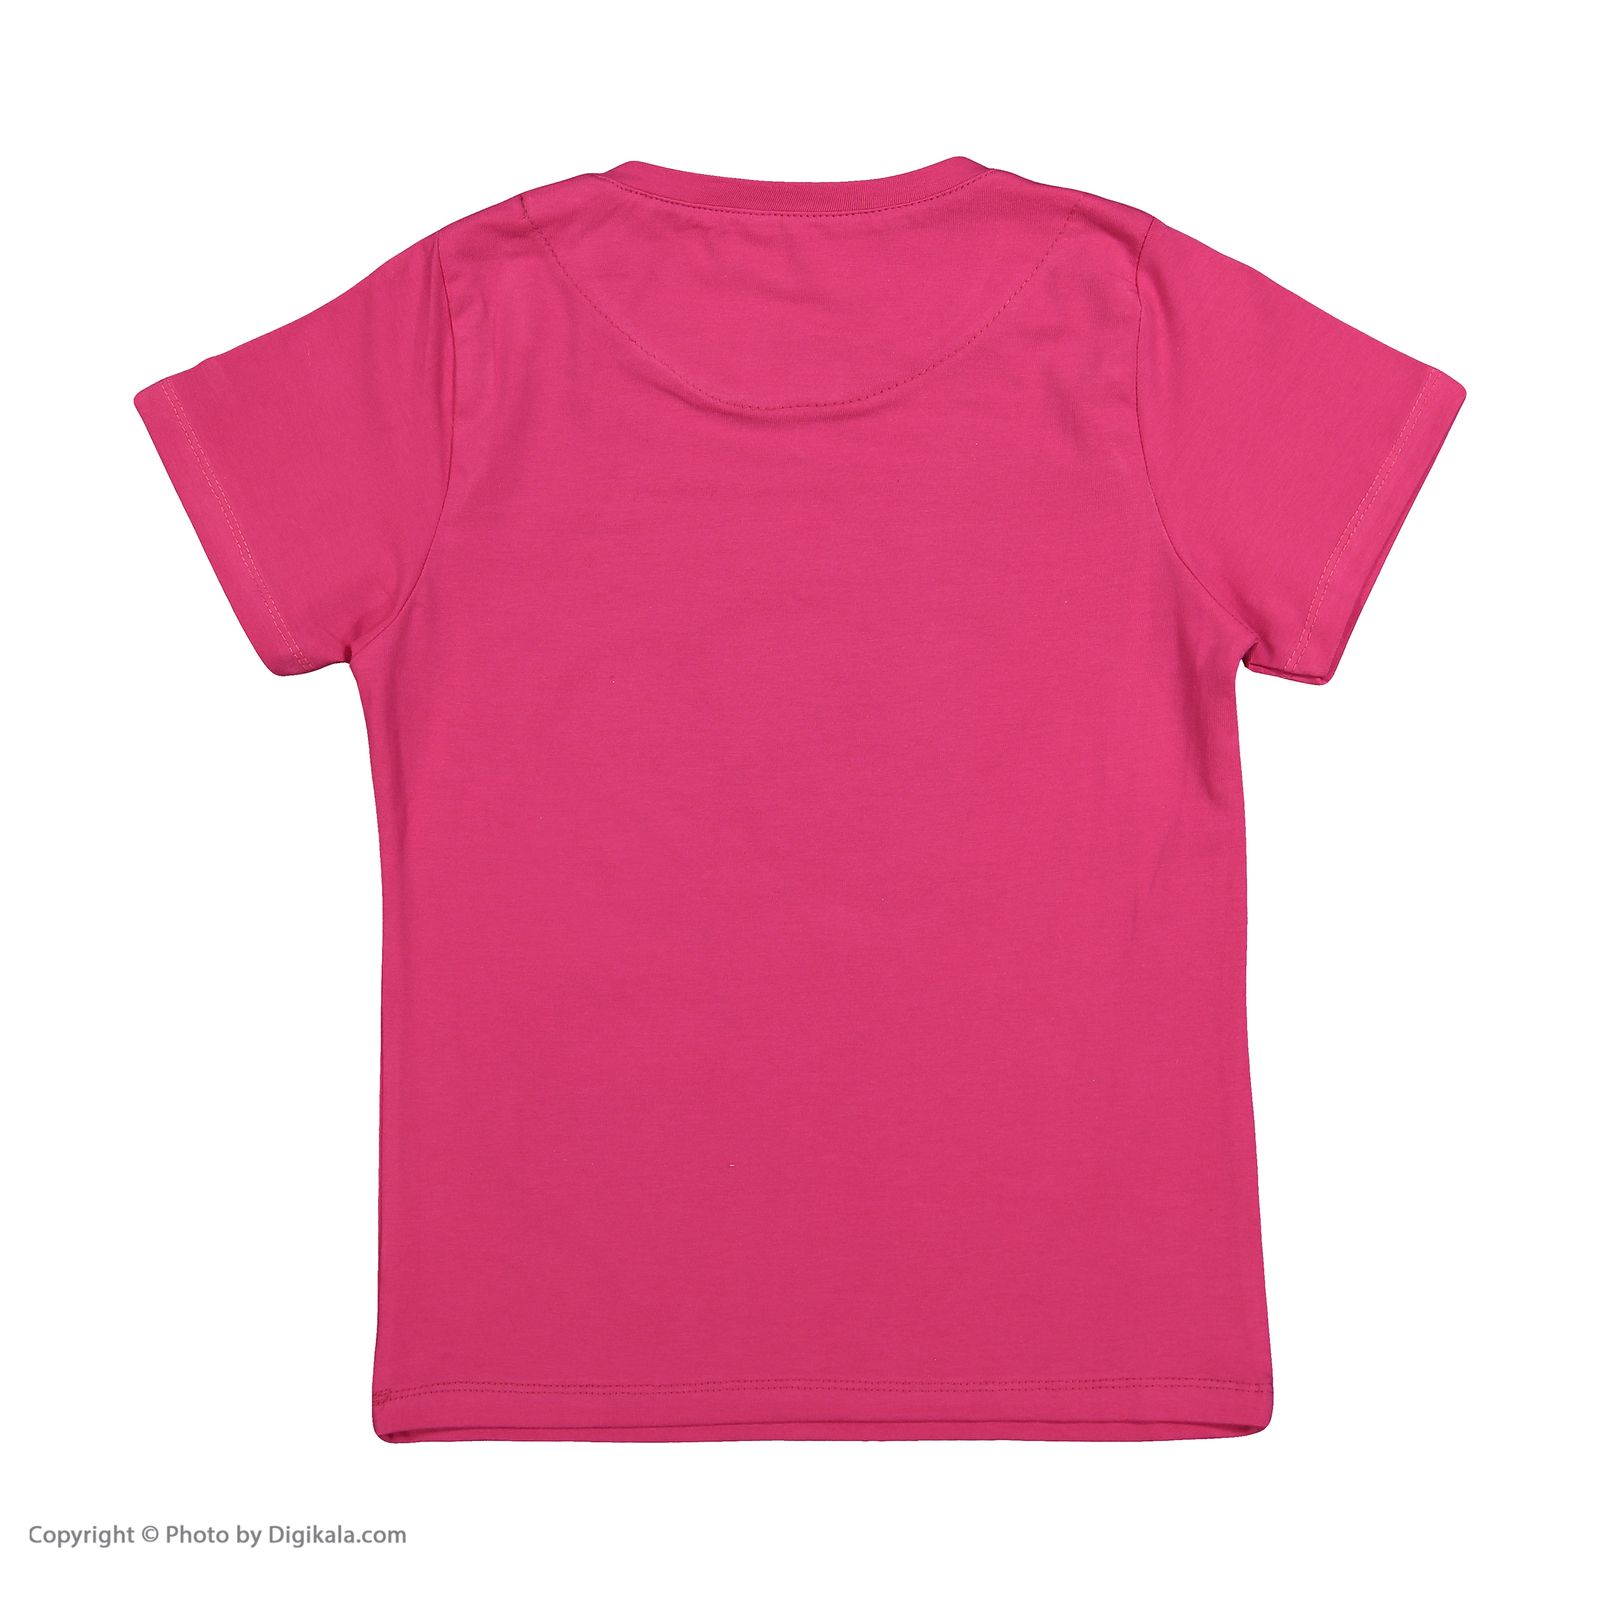 ست تی شرت و شلوار دخترانه مادر مدل 2041101-66 -  - 4